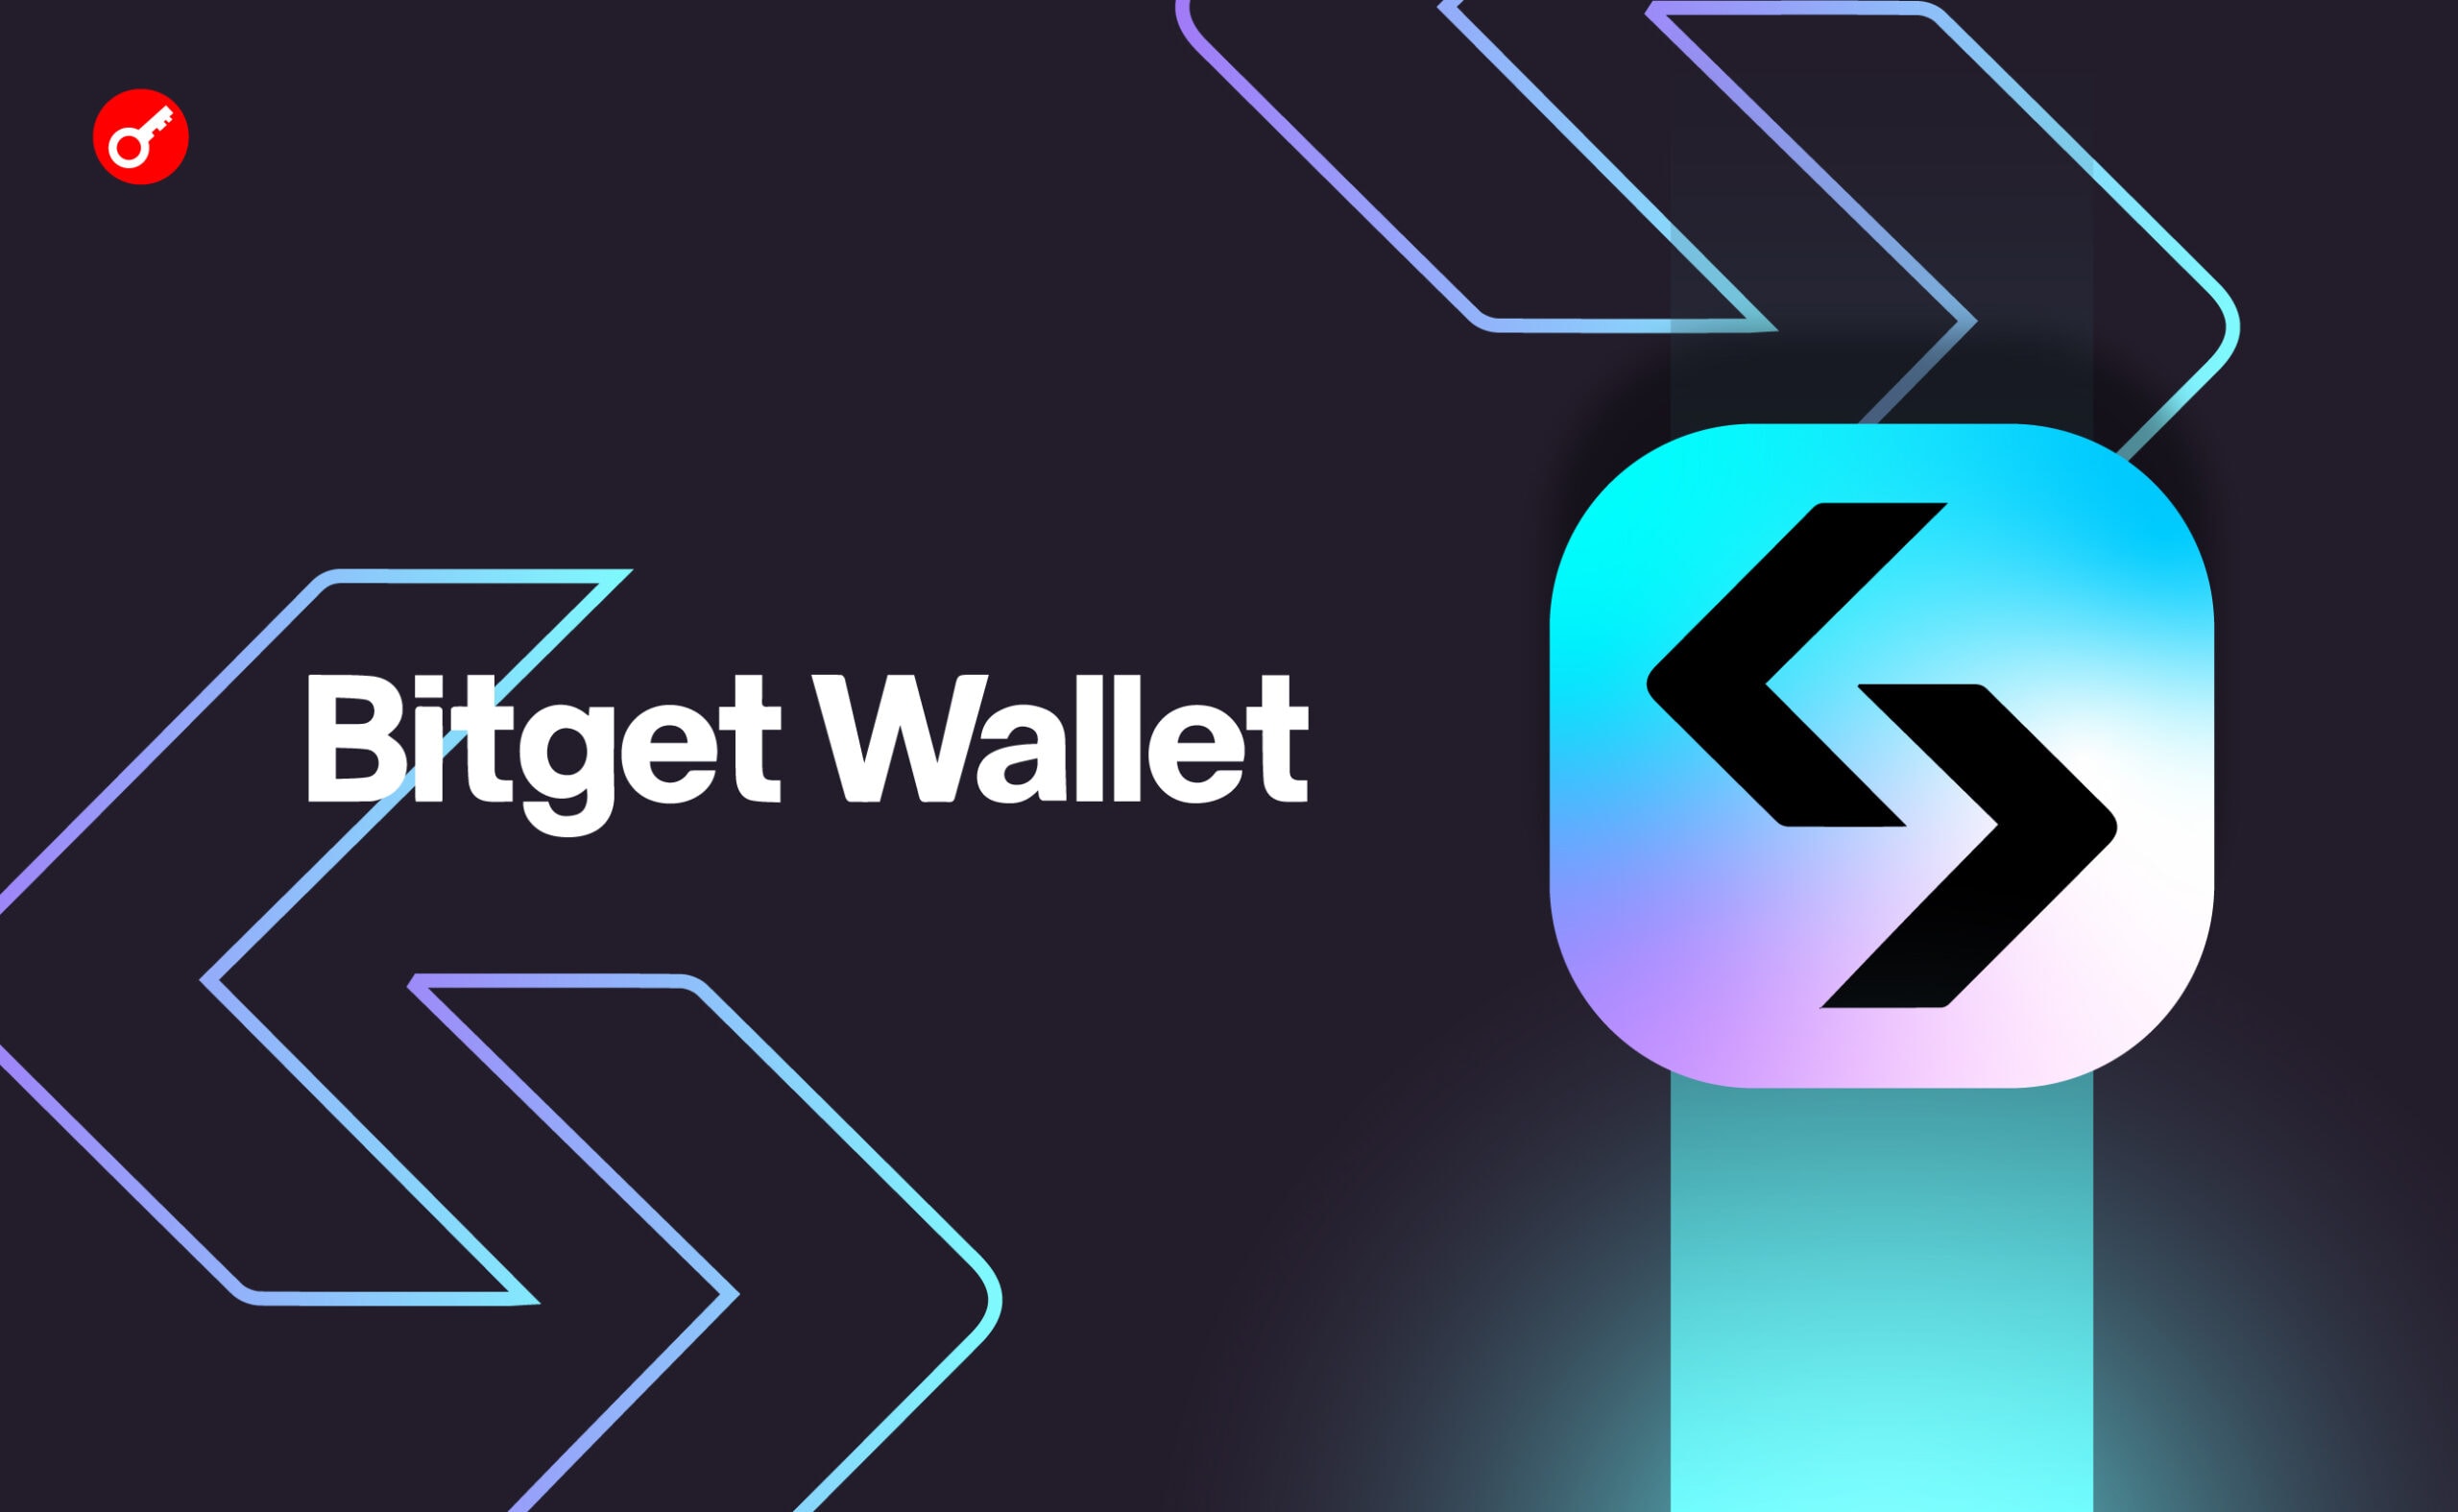 Bitget Wallet запустил мониторинг Smart Money для Solana. Заглавный коллаж новости.